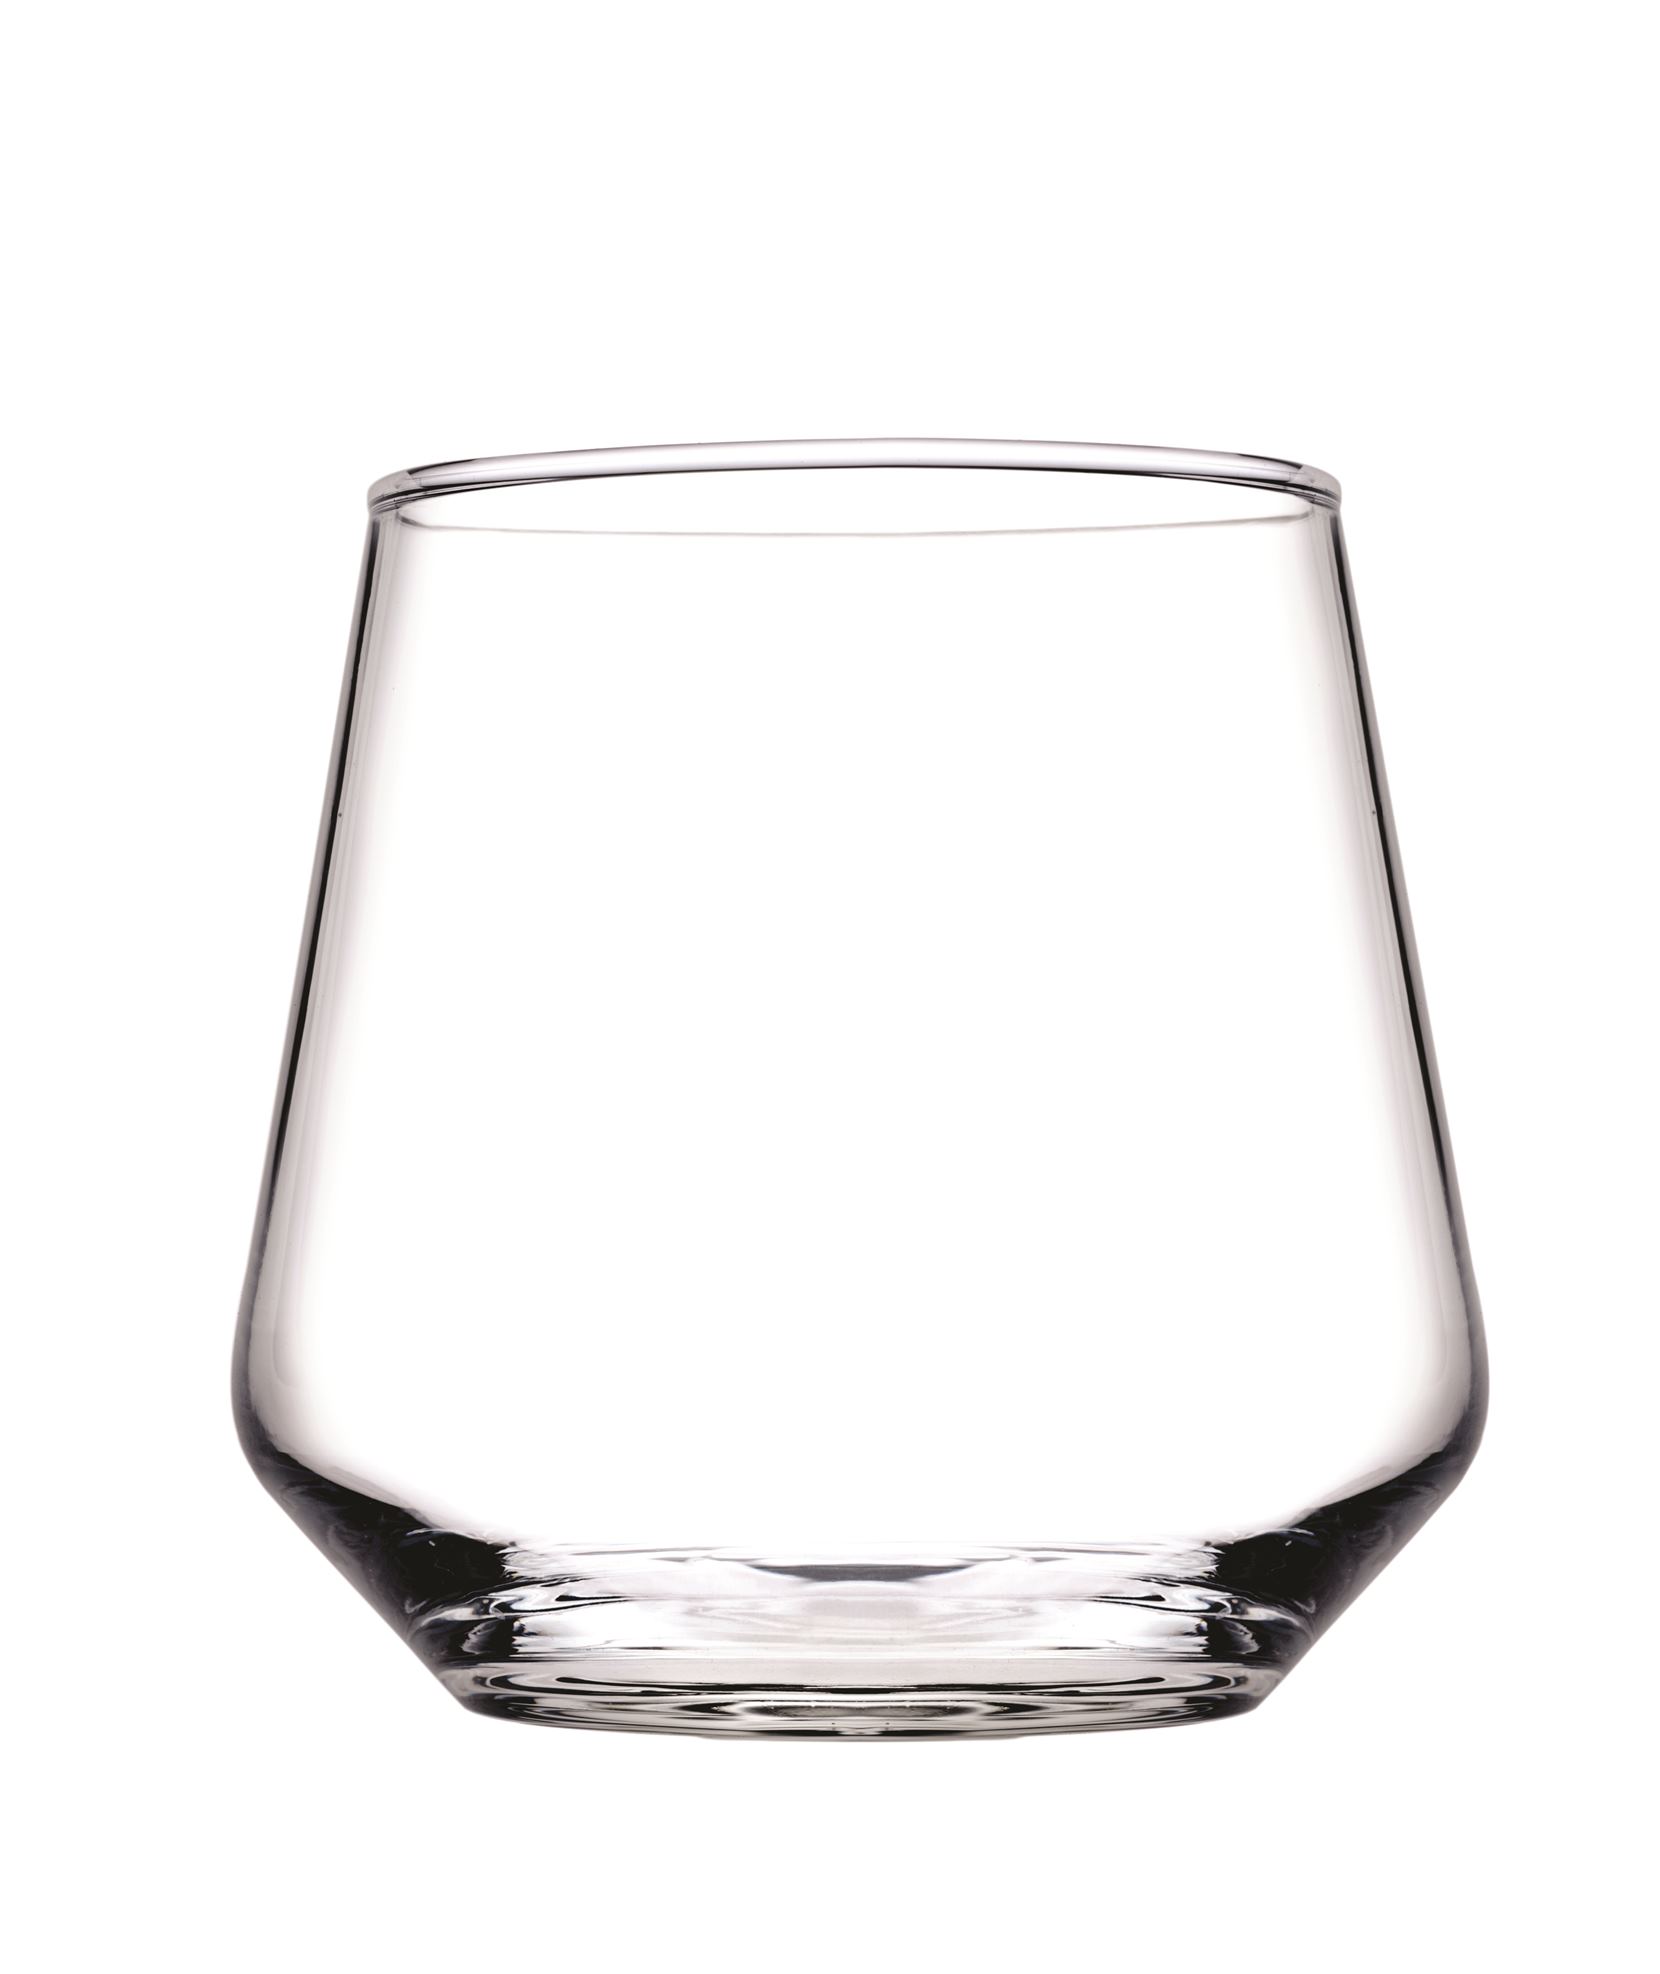 Whiskyglas Inhalt 0,345 Liter, Serie Allegra, aus Glas